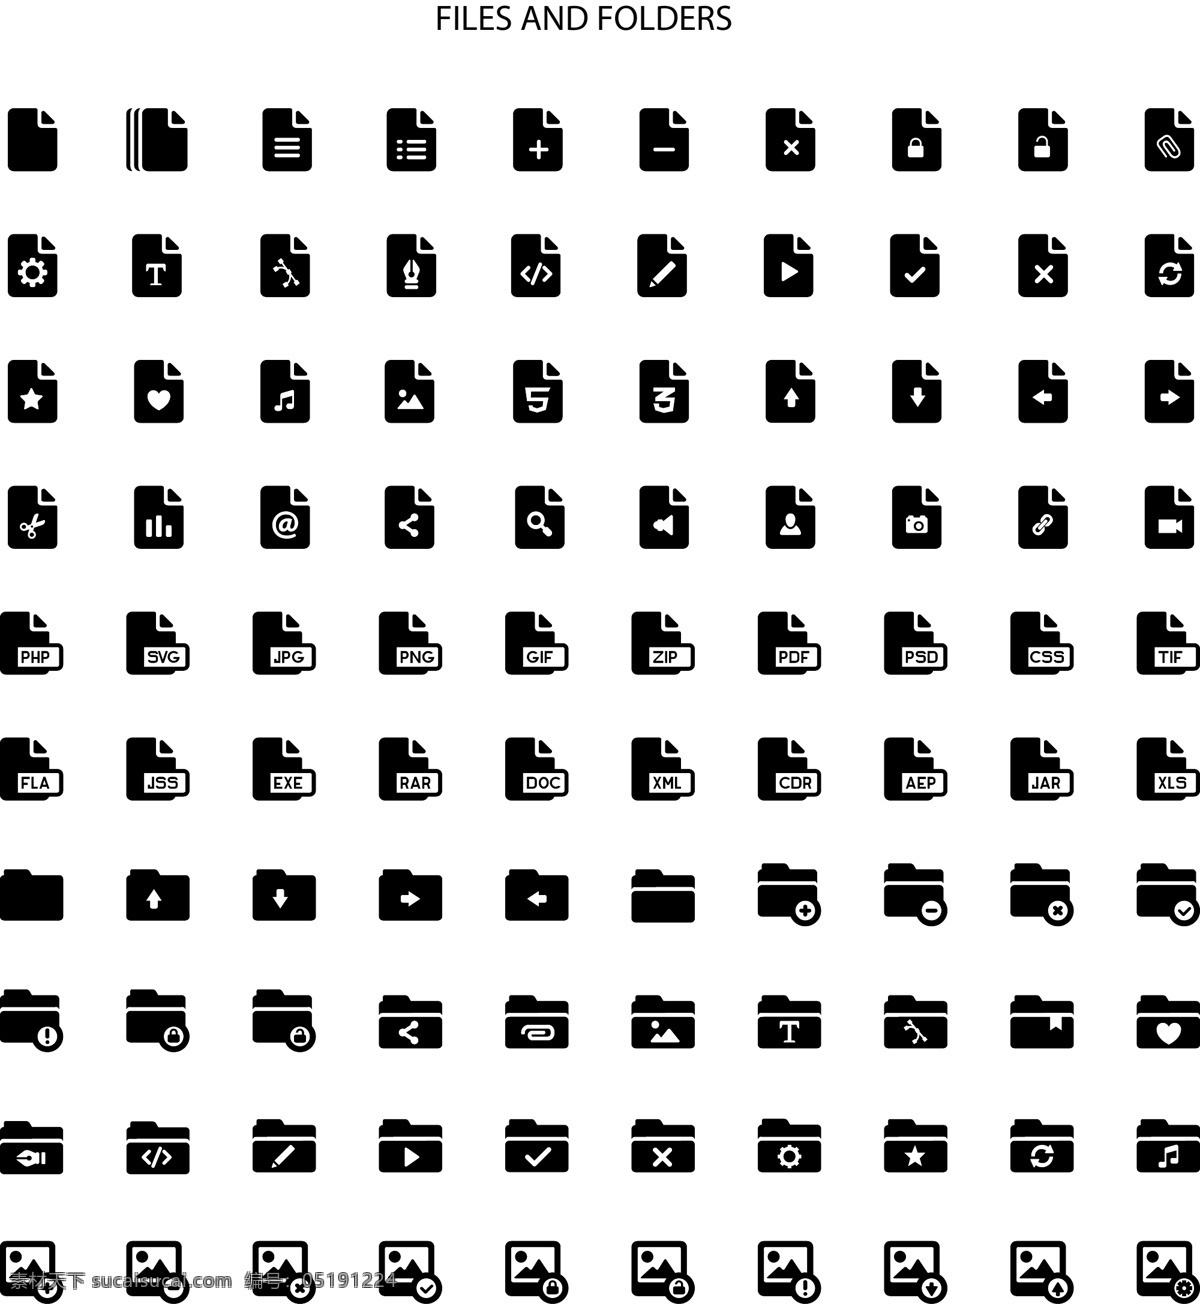 电脑 文件夹 矢量 图标素材 矢量素材 设计素材 背景素材